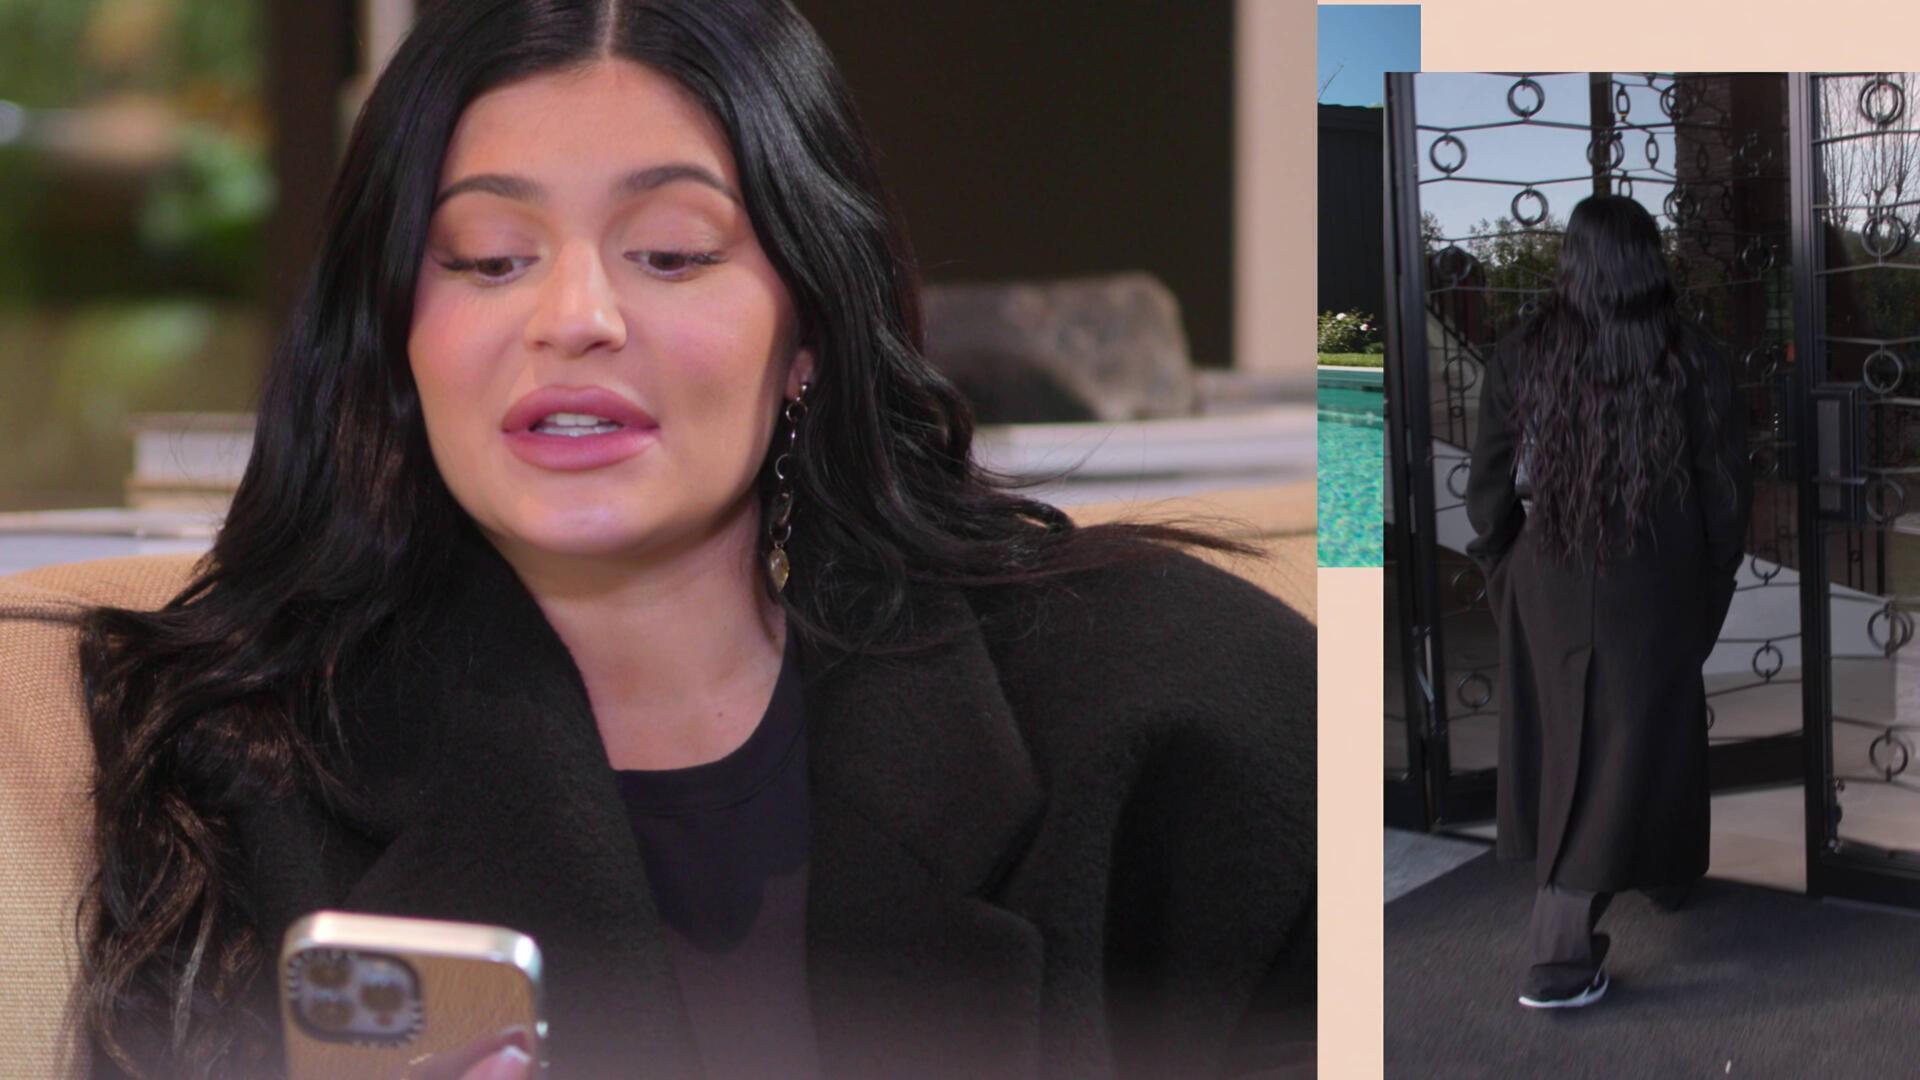 Kylie Jenner – The Kardashians | Season 2 Episode 2 | Kylie Jenner style